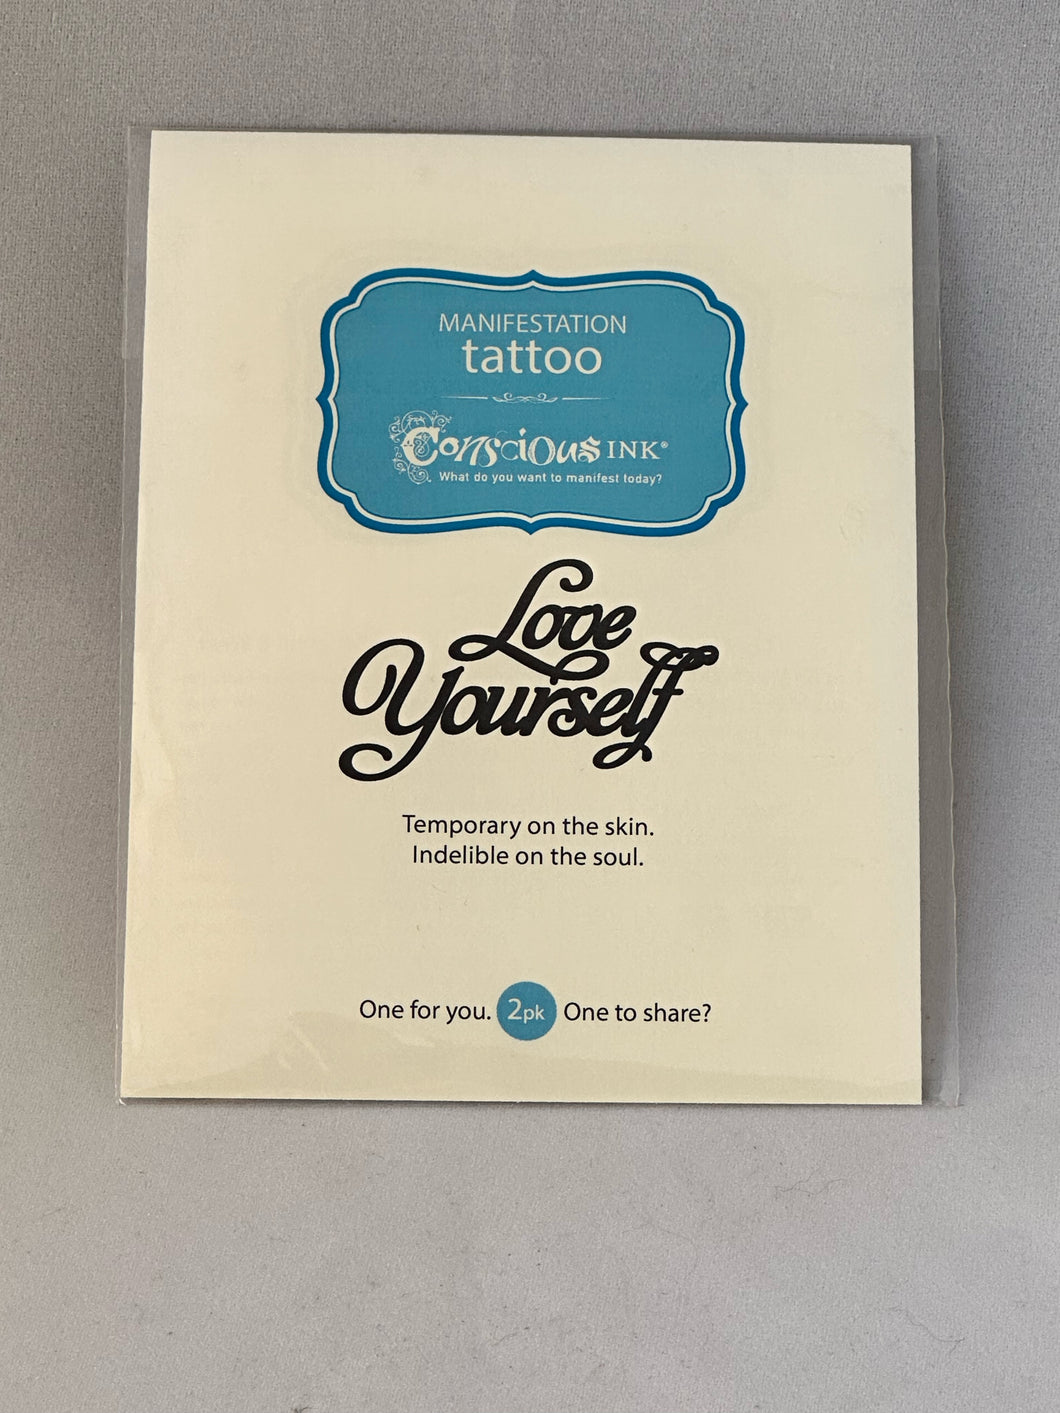 Tatto: Love yourself